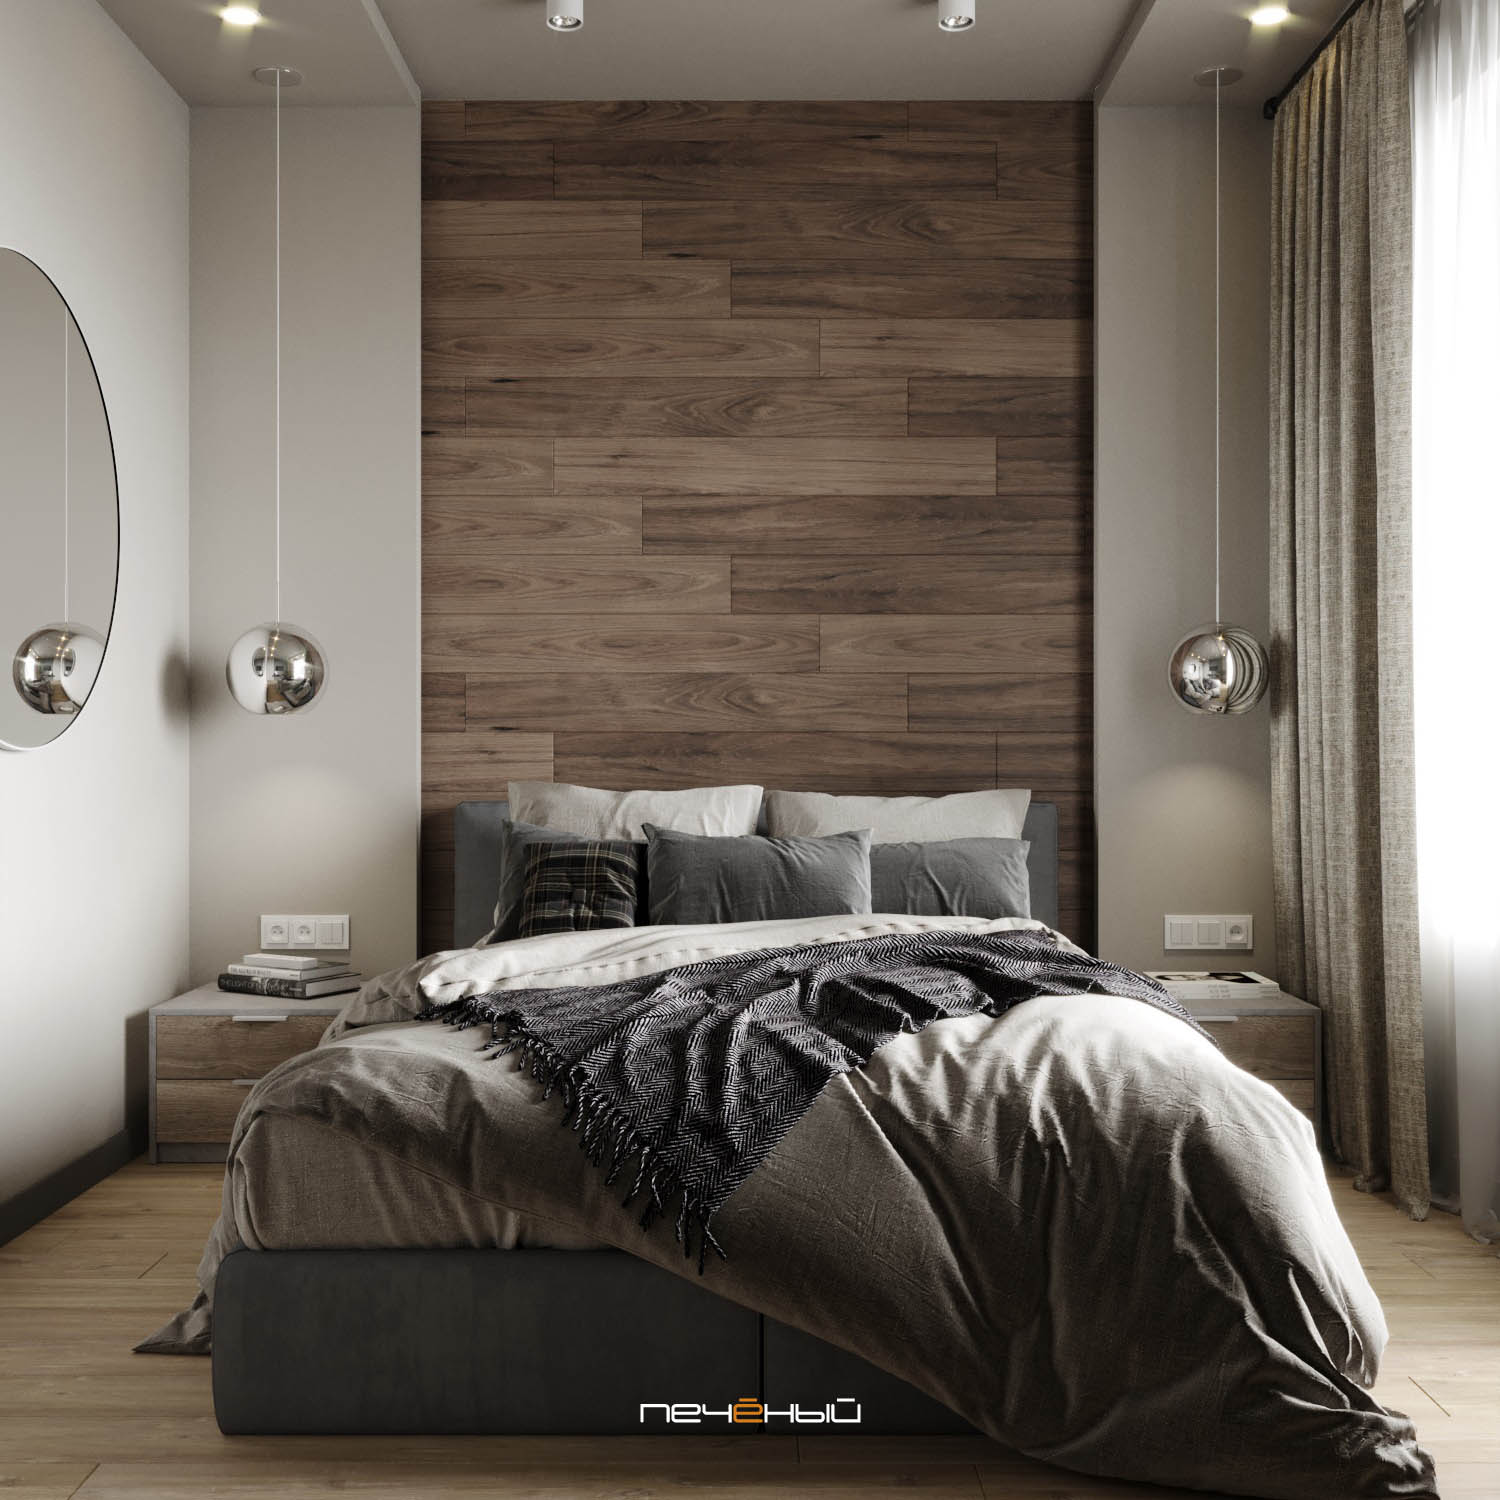 Создадим дизайн интерьера спальни вашей мечты